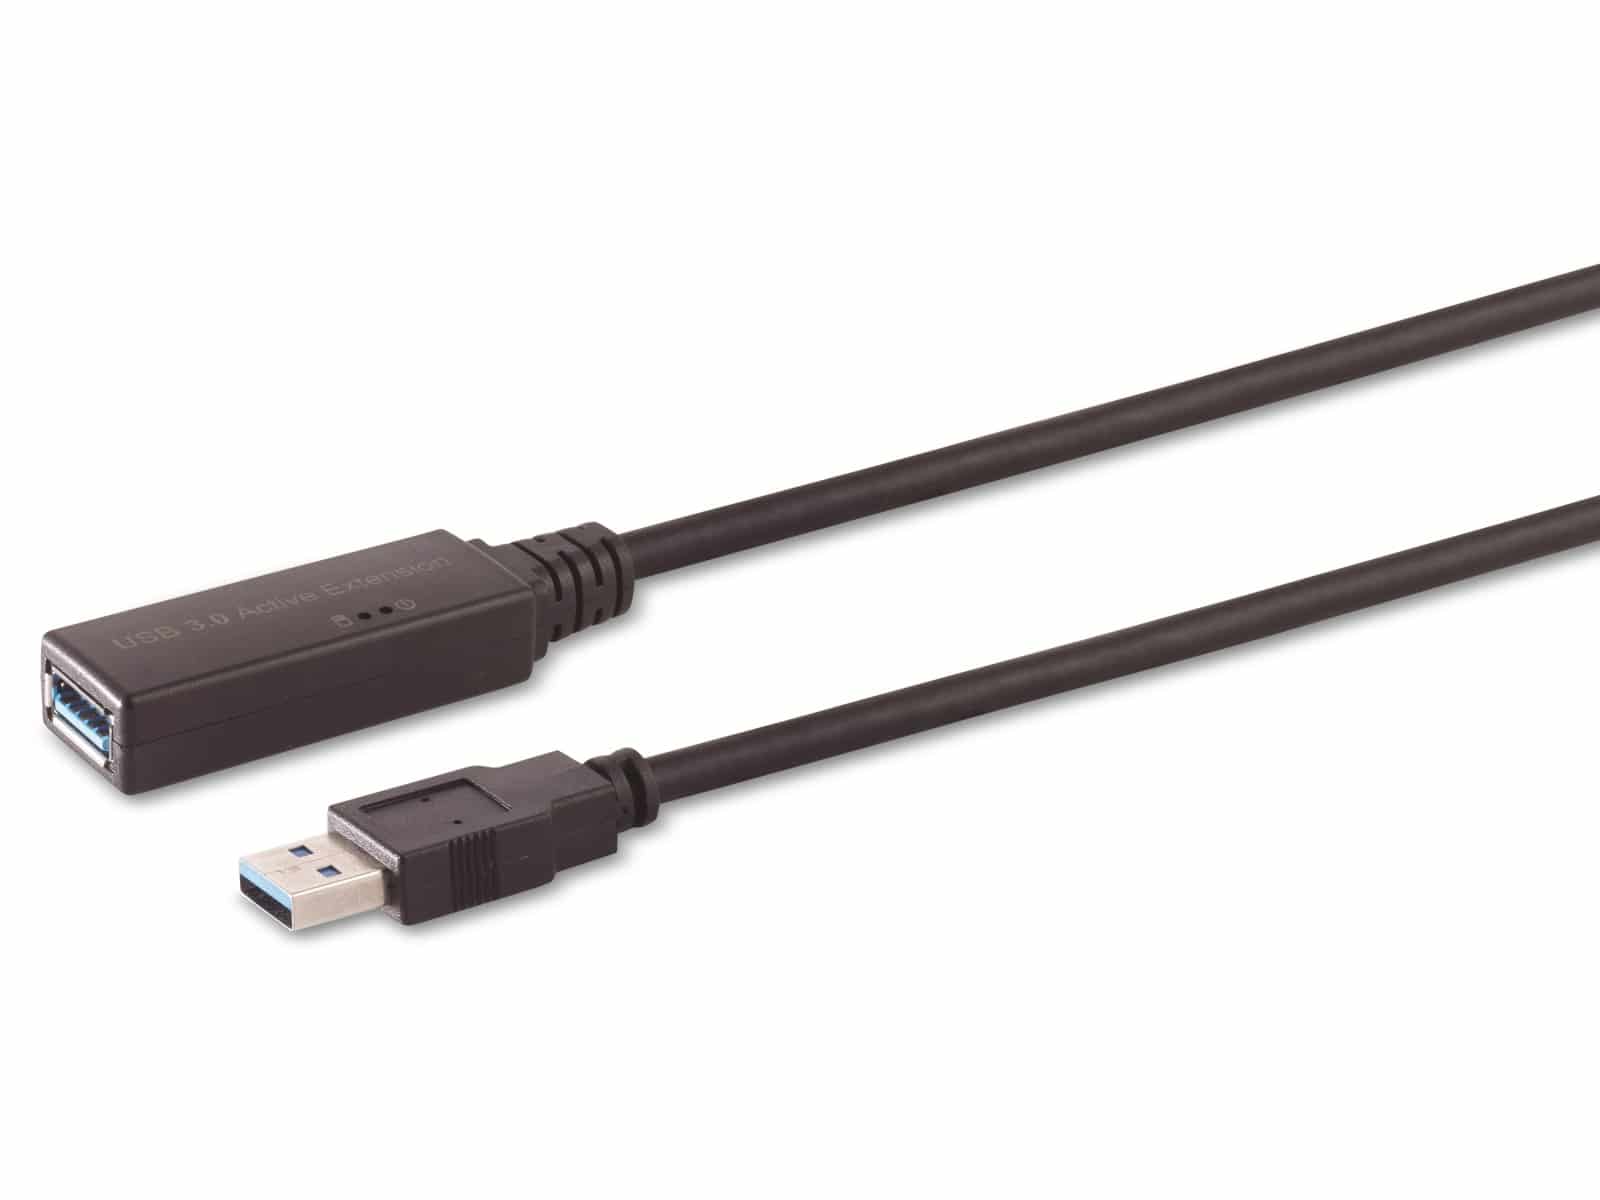 Aktive USB-A Verlängerung, USB 3.0, 5 Gbps, 5 m